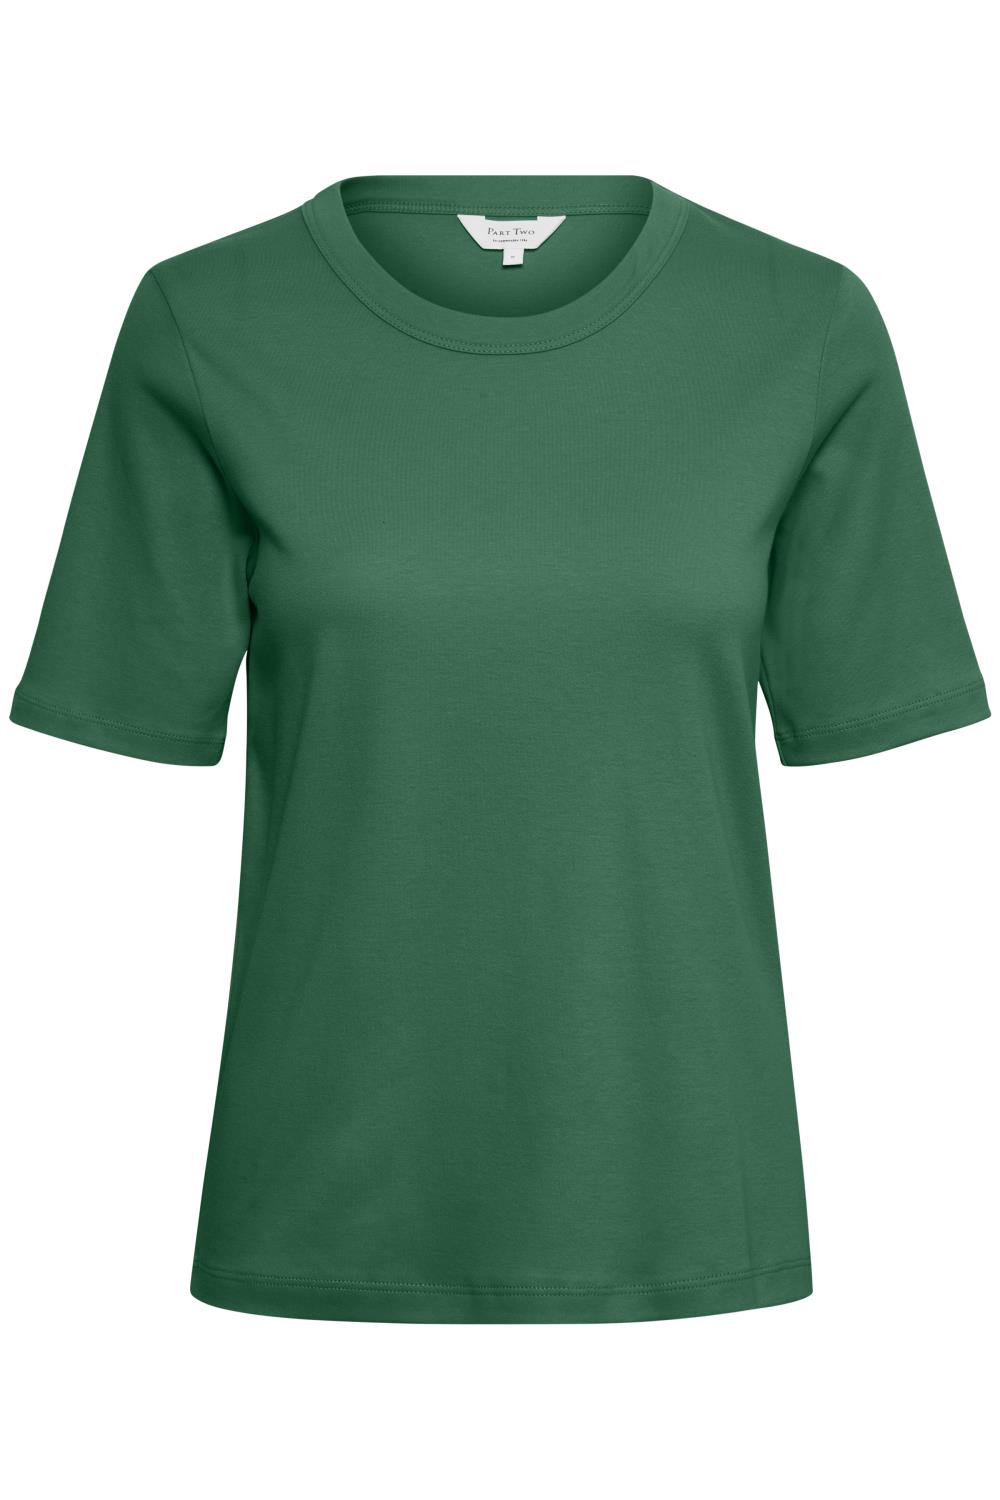 Part Two Ratana T-shirt, mørk grønn, 100% bomull